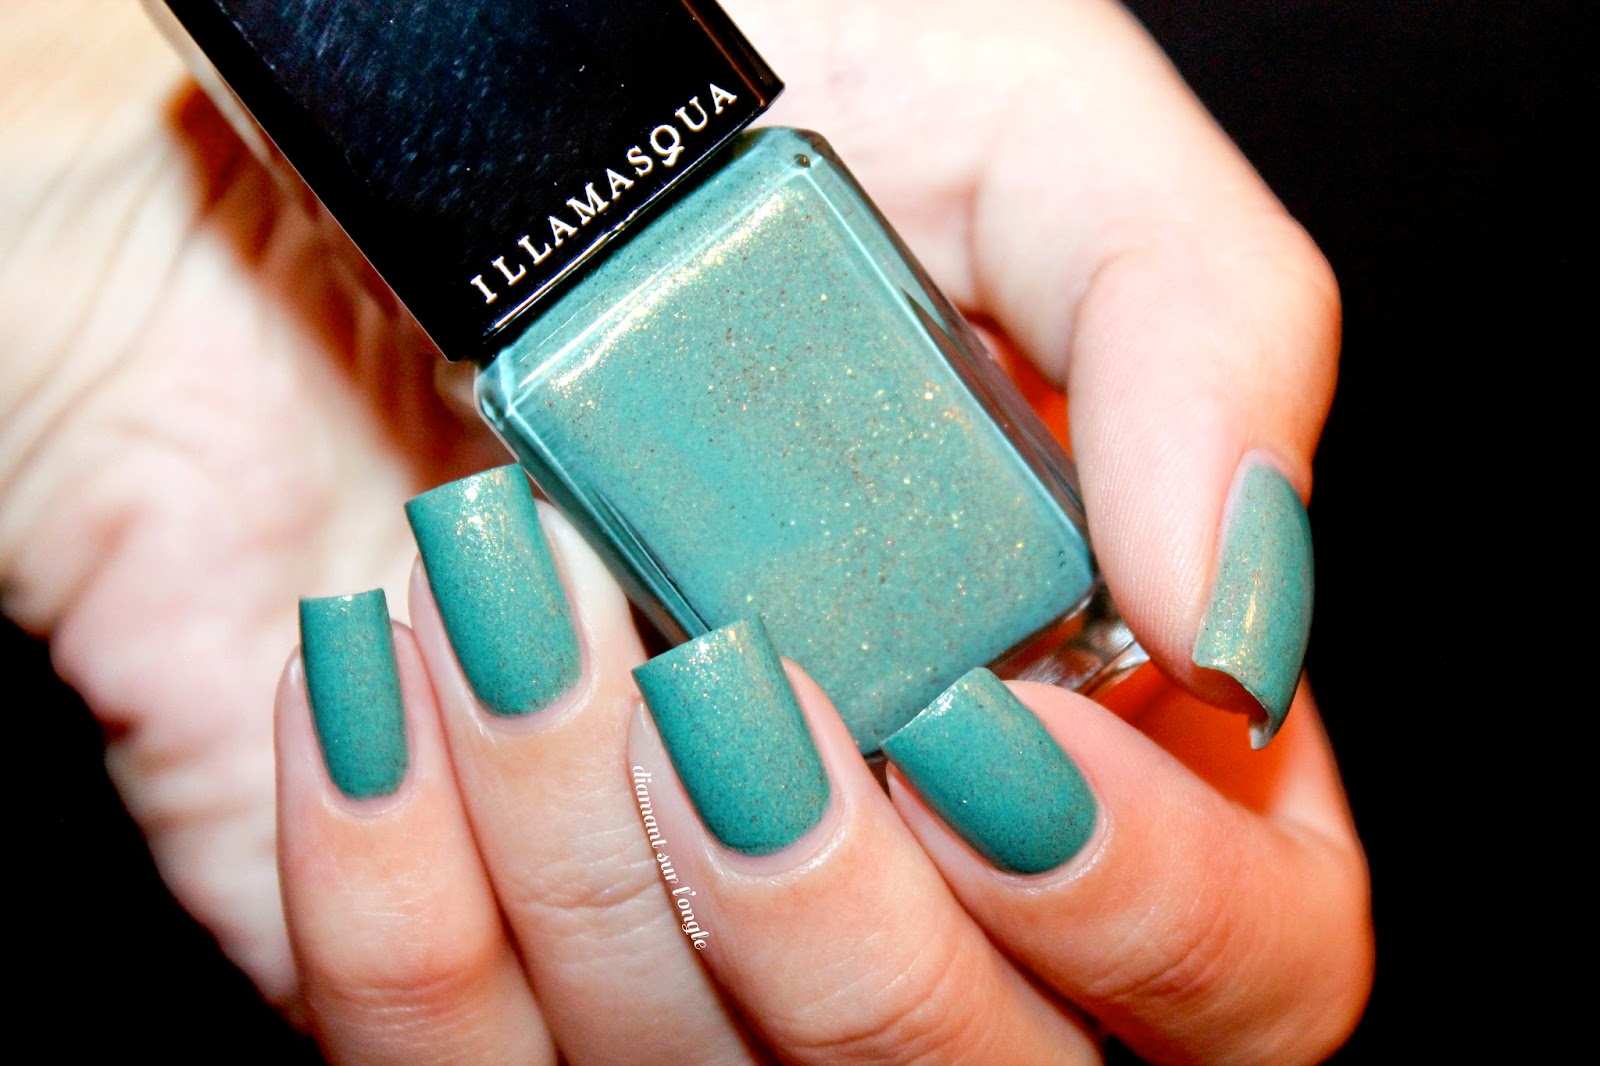 Swatch of the nail polish "Melange" by Illamasqua 